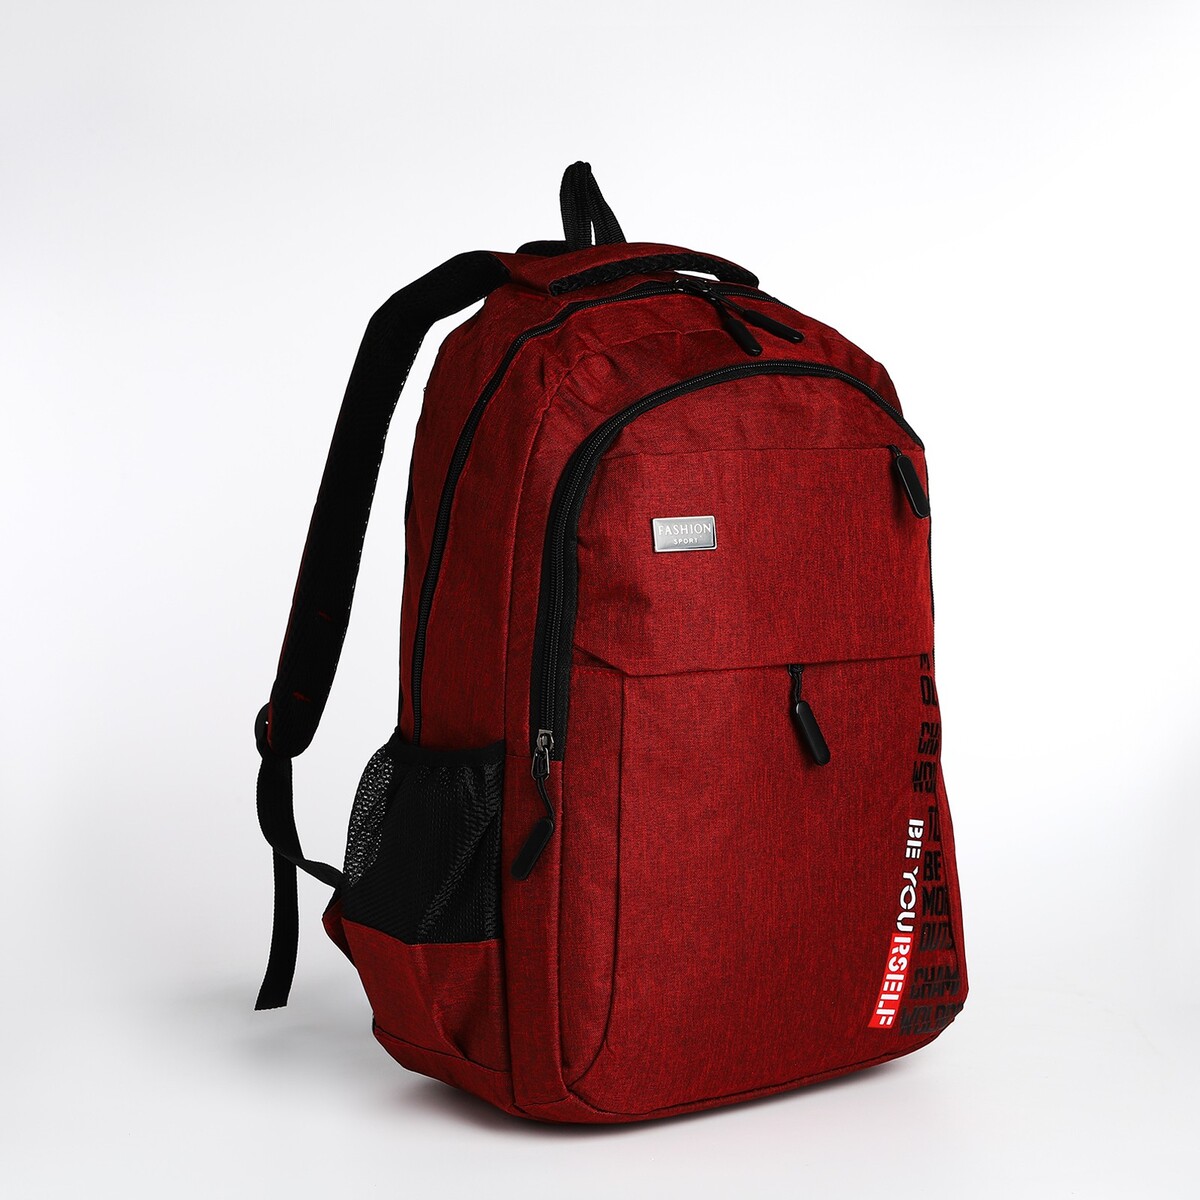 Рюкзак молодежный на молнии, 4 кармана, цвет бордовый pixel bag рюкзак с led дисплеем pixel plus red line бордовый